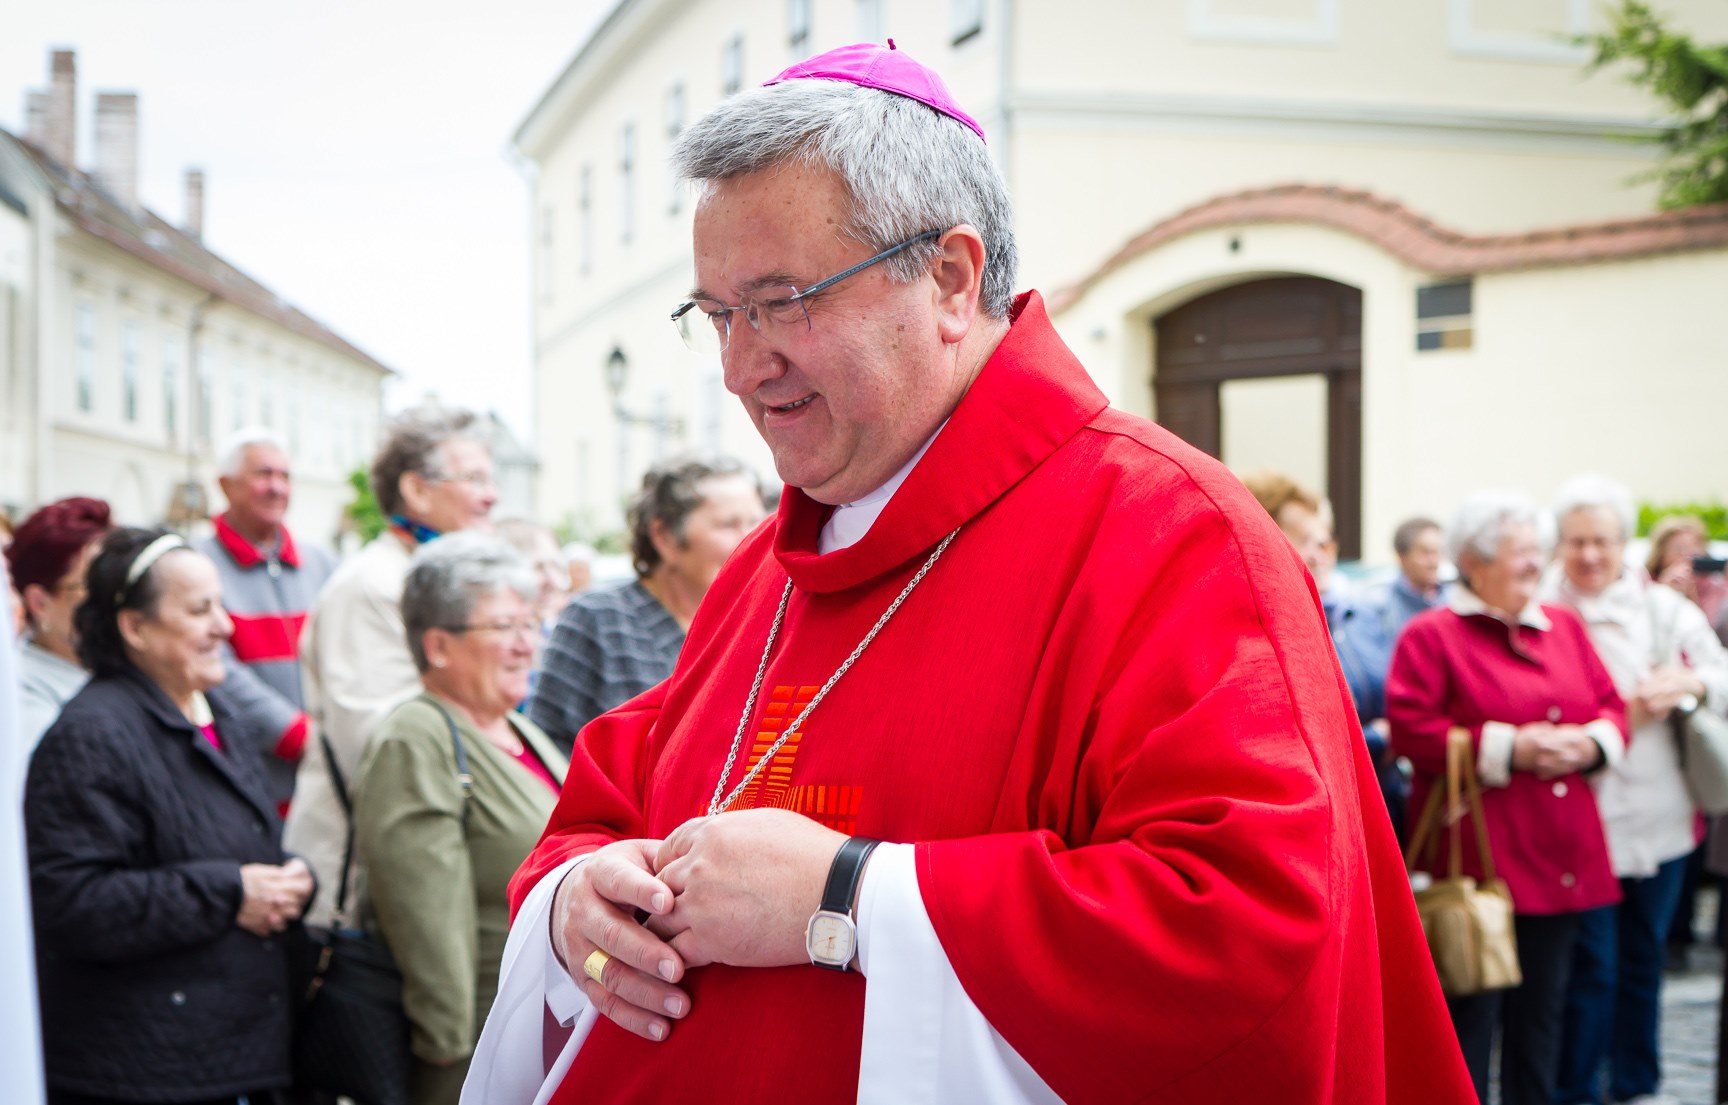 A győri püspök közölte a szülőkkel, hogy nincs törvényes lehetősége változtatni a saját döntésén